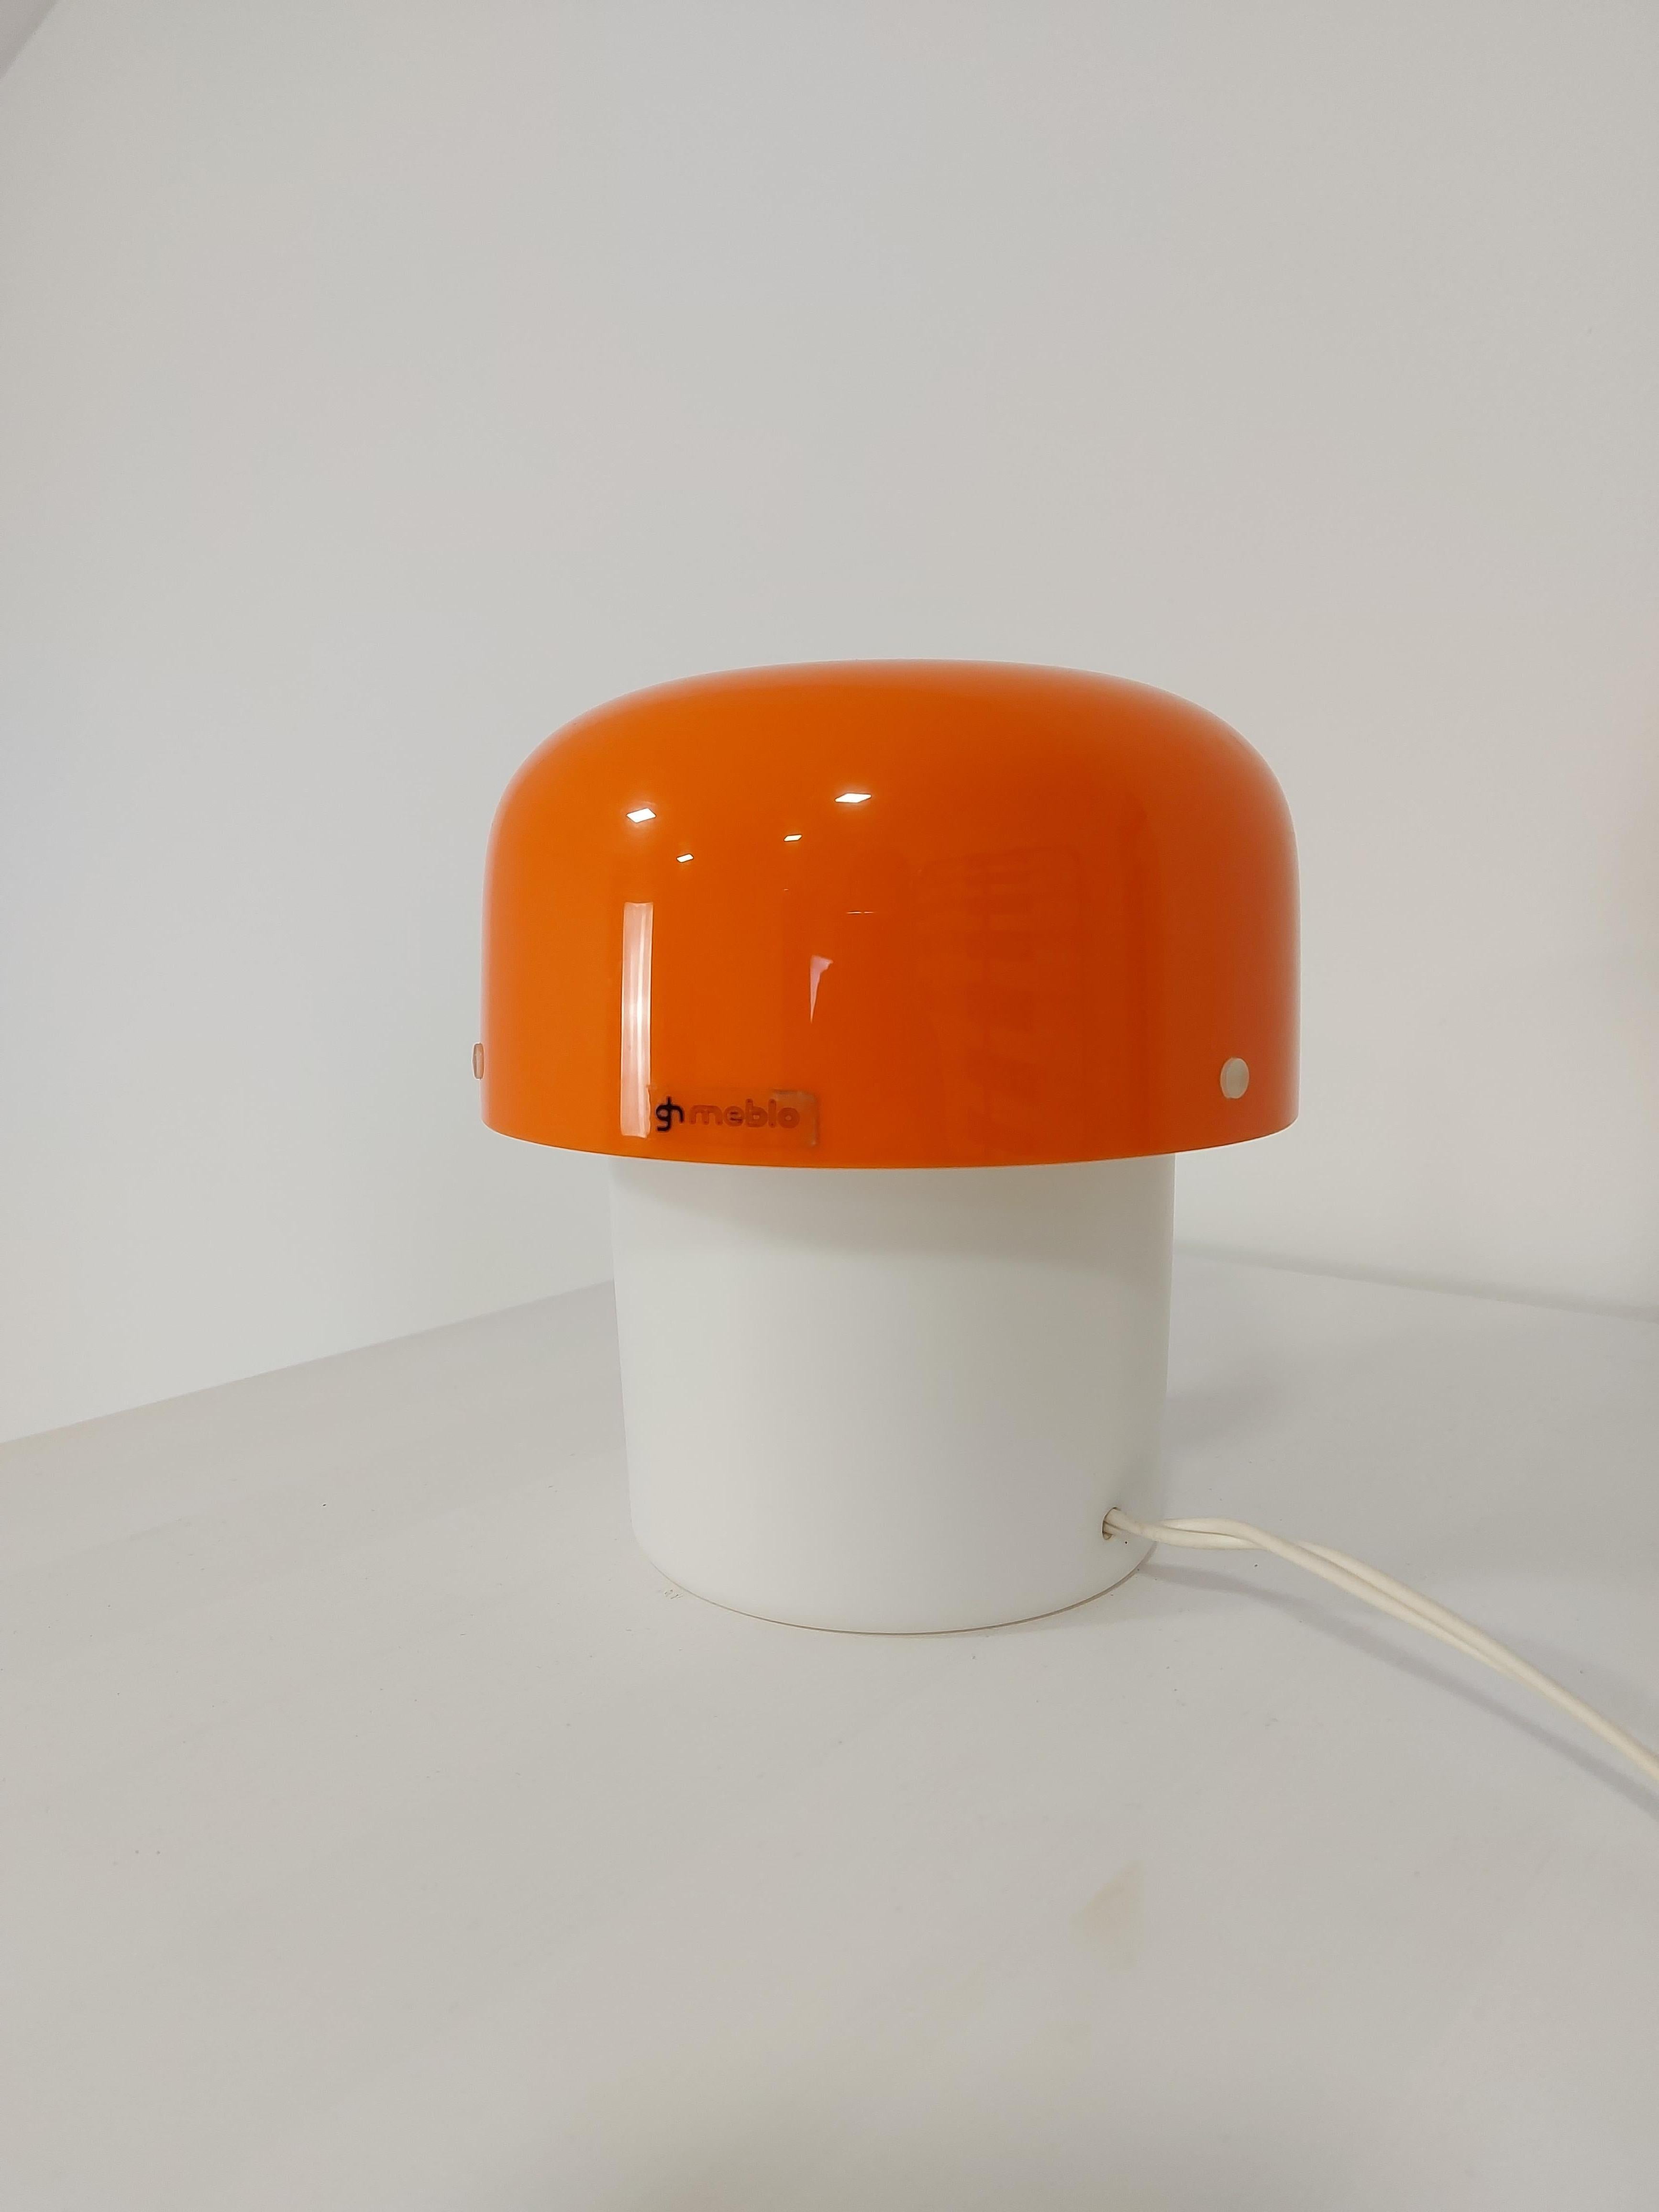 Elegante Harvey-Guzzini-Lampe von Meblo aus den 70er Jahren. Dies ist eine kleine und seltene Lampe in gutem Zustand, es funktioniert perfekt. Die Lampe schafft eine warme Atmosphäre. Nette kleine Lampe aus den 70er Jahren.